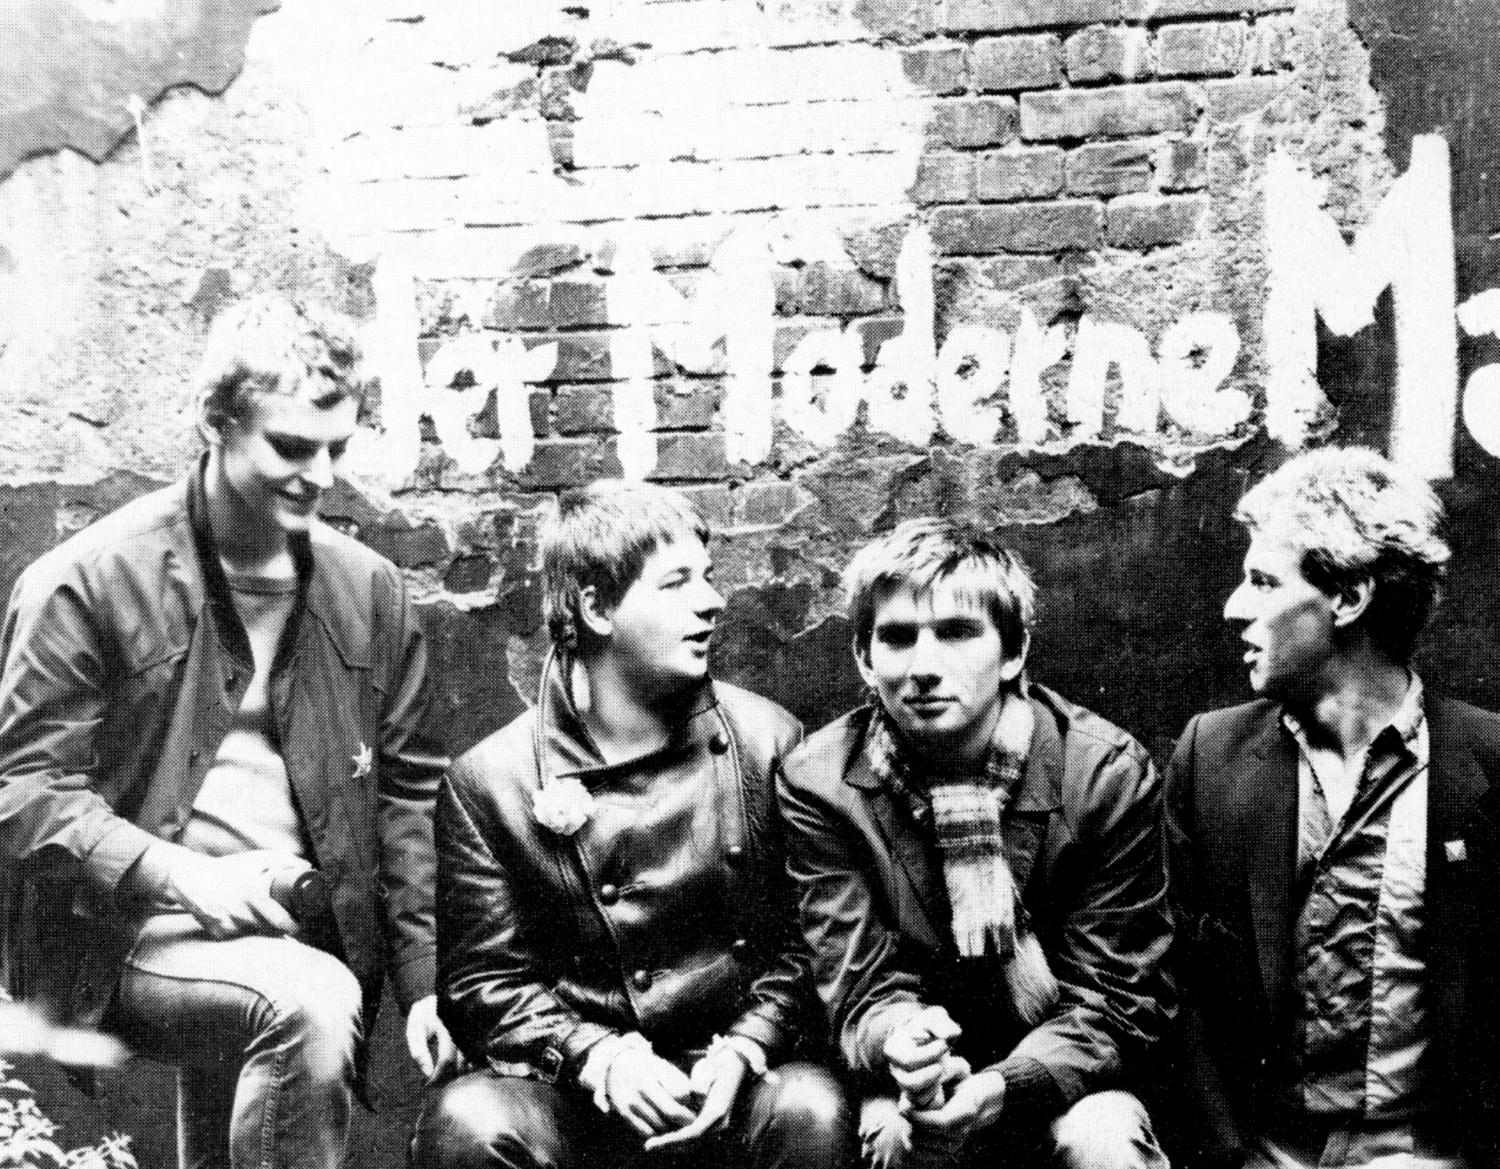 Ein altes schwarz-weiß Bild von vier Männern, die vor einer Wand knien.